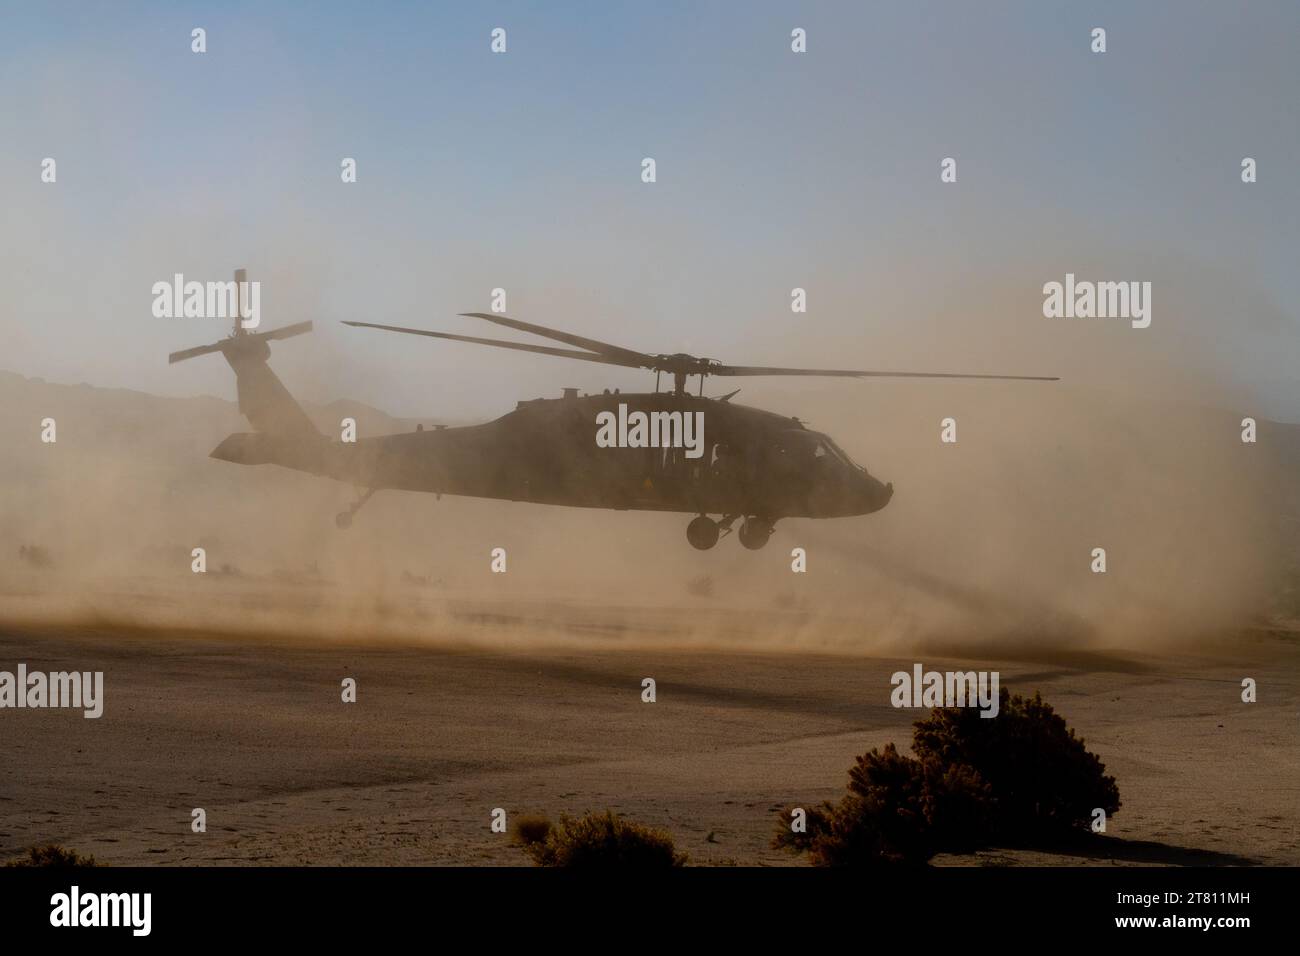 Gli elicotteri Blackhawk dell'esercito degli Stati Uniti sollevano nuvole di sabbia e polvere mentre eseguono manovre nel deserto della California vicino a Fort Irwin. Foto Stock